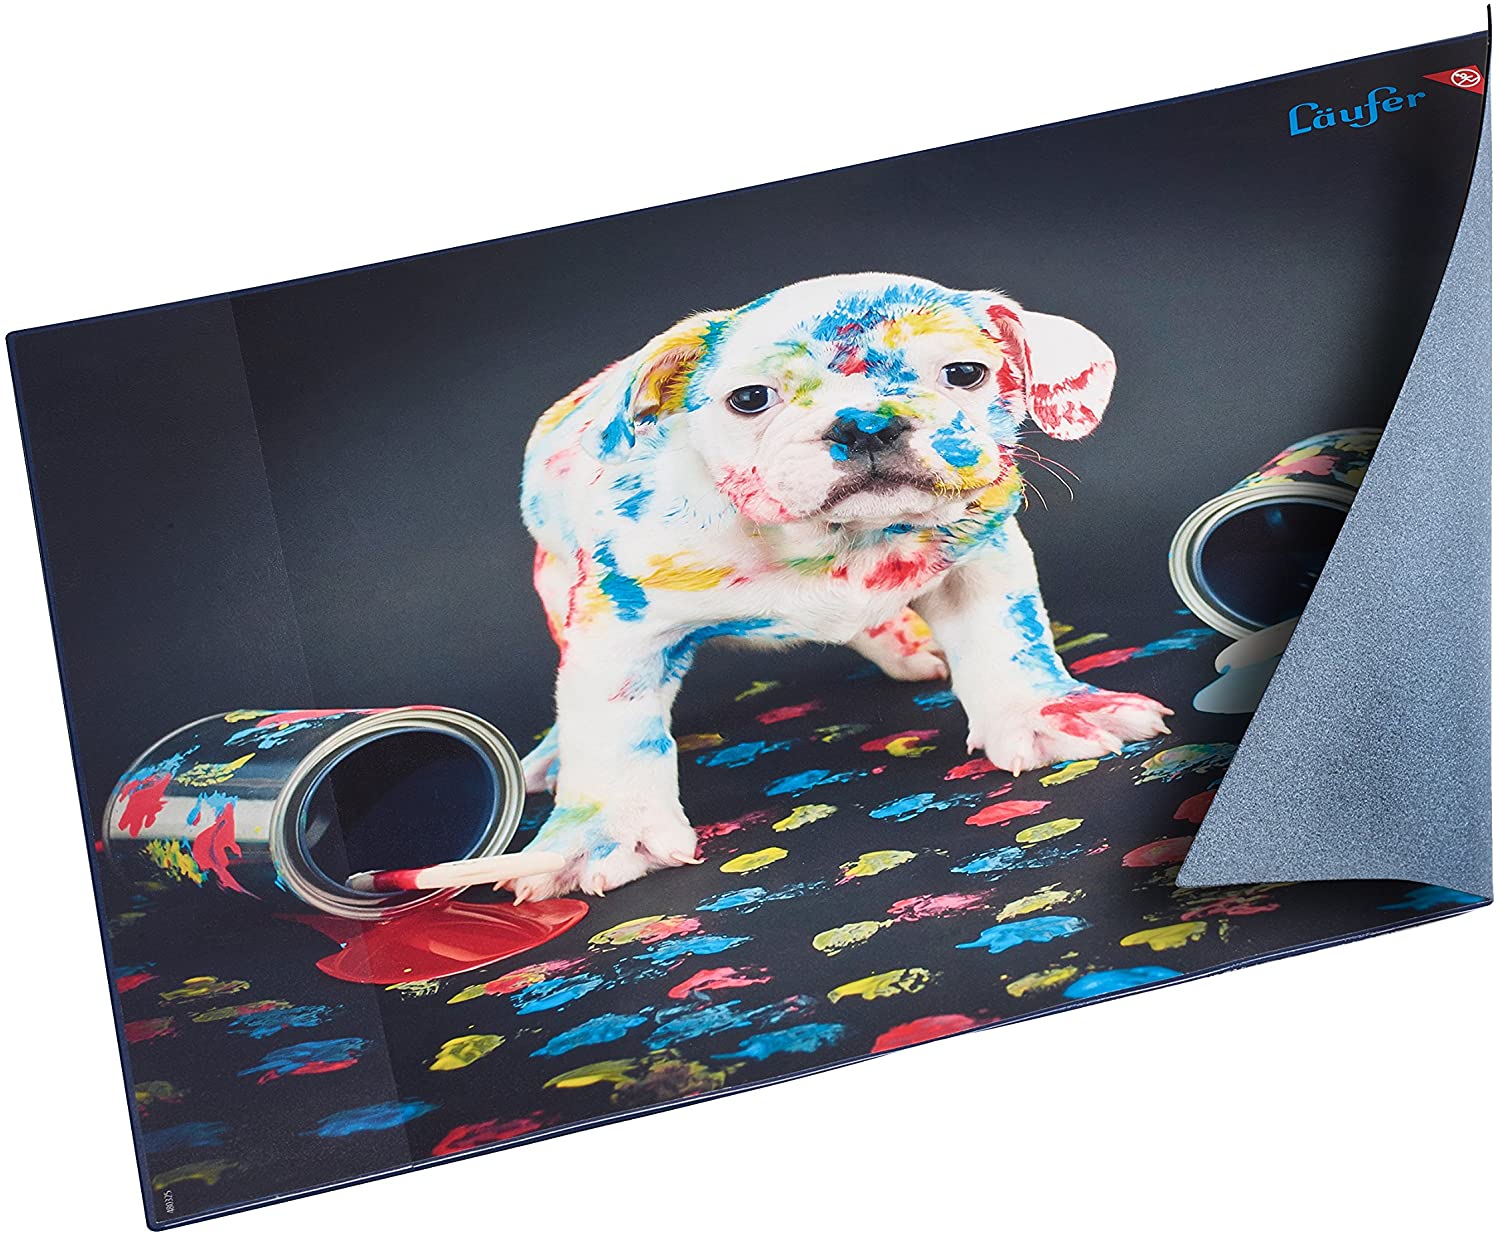 Lufer Schreibunterlage Bunter Hund, 400 x 530 mm